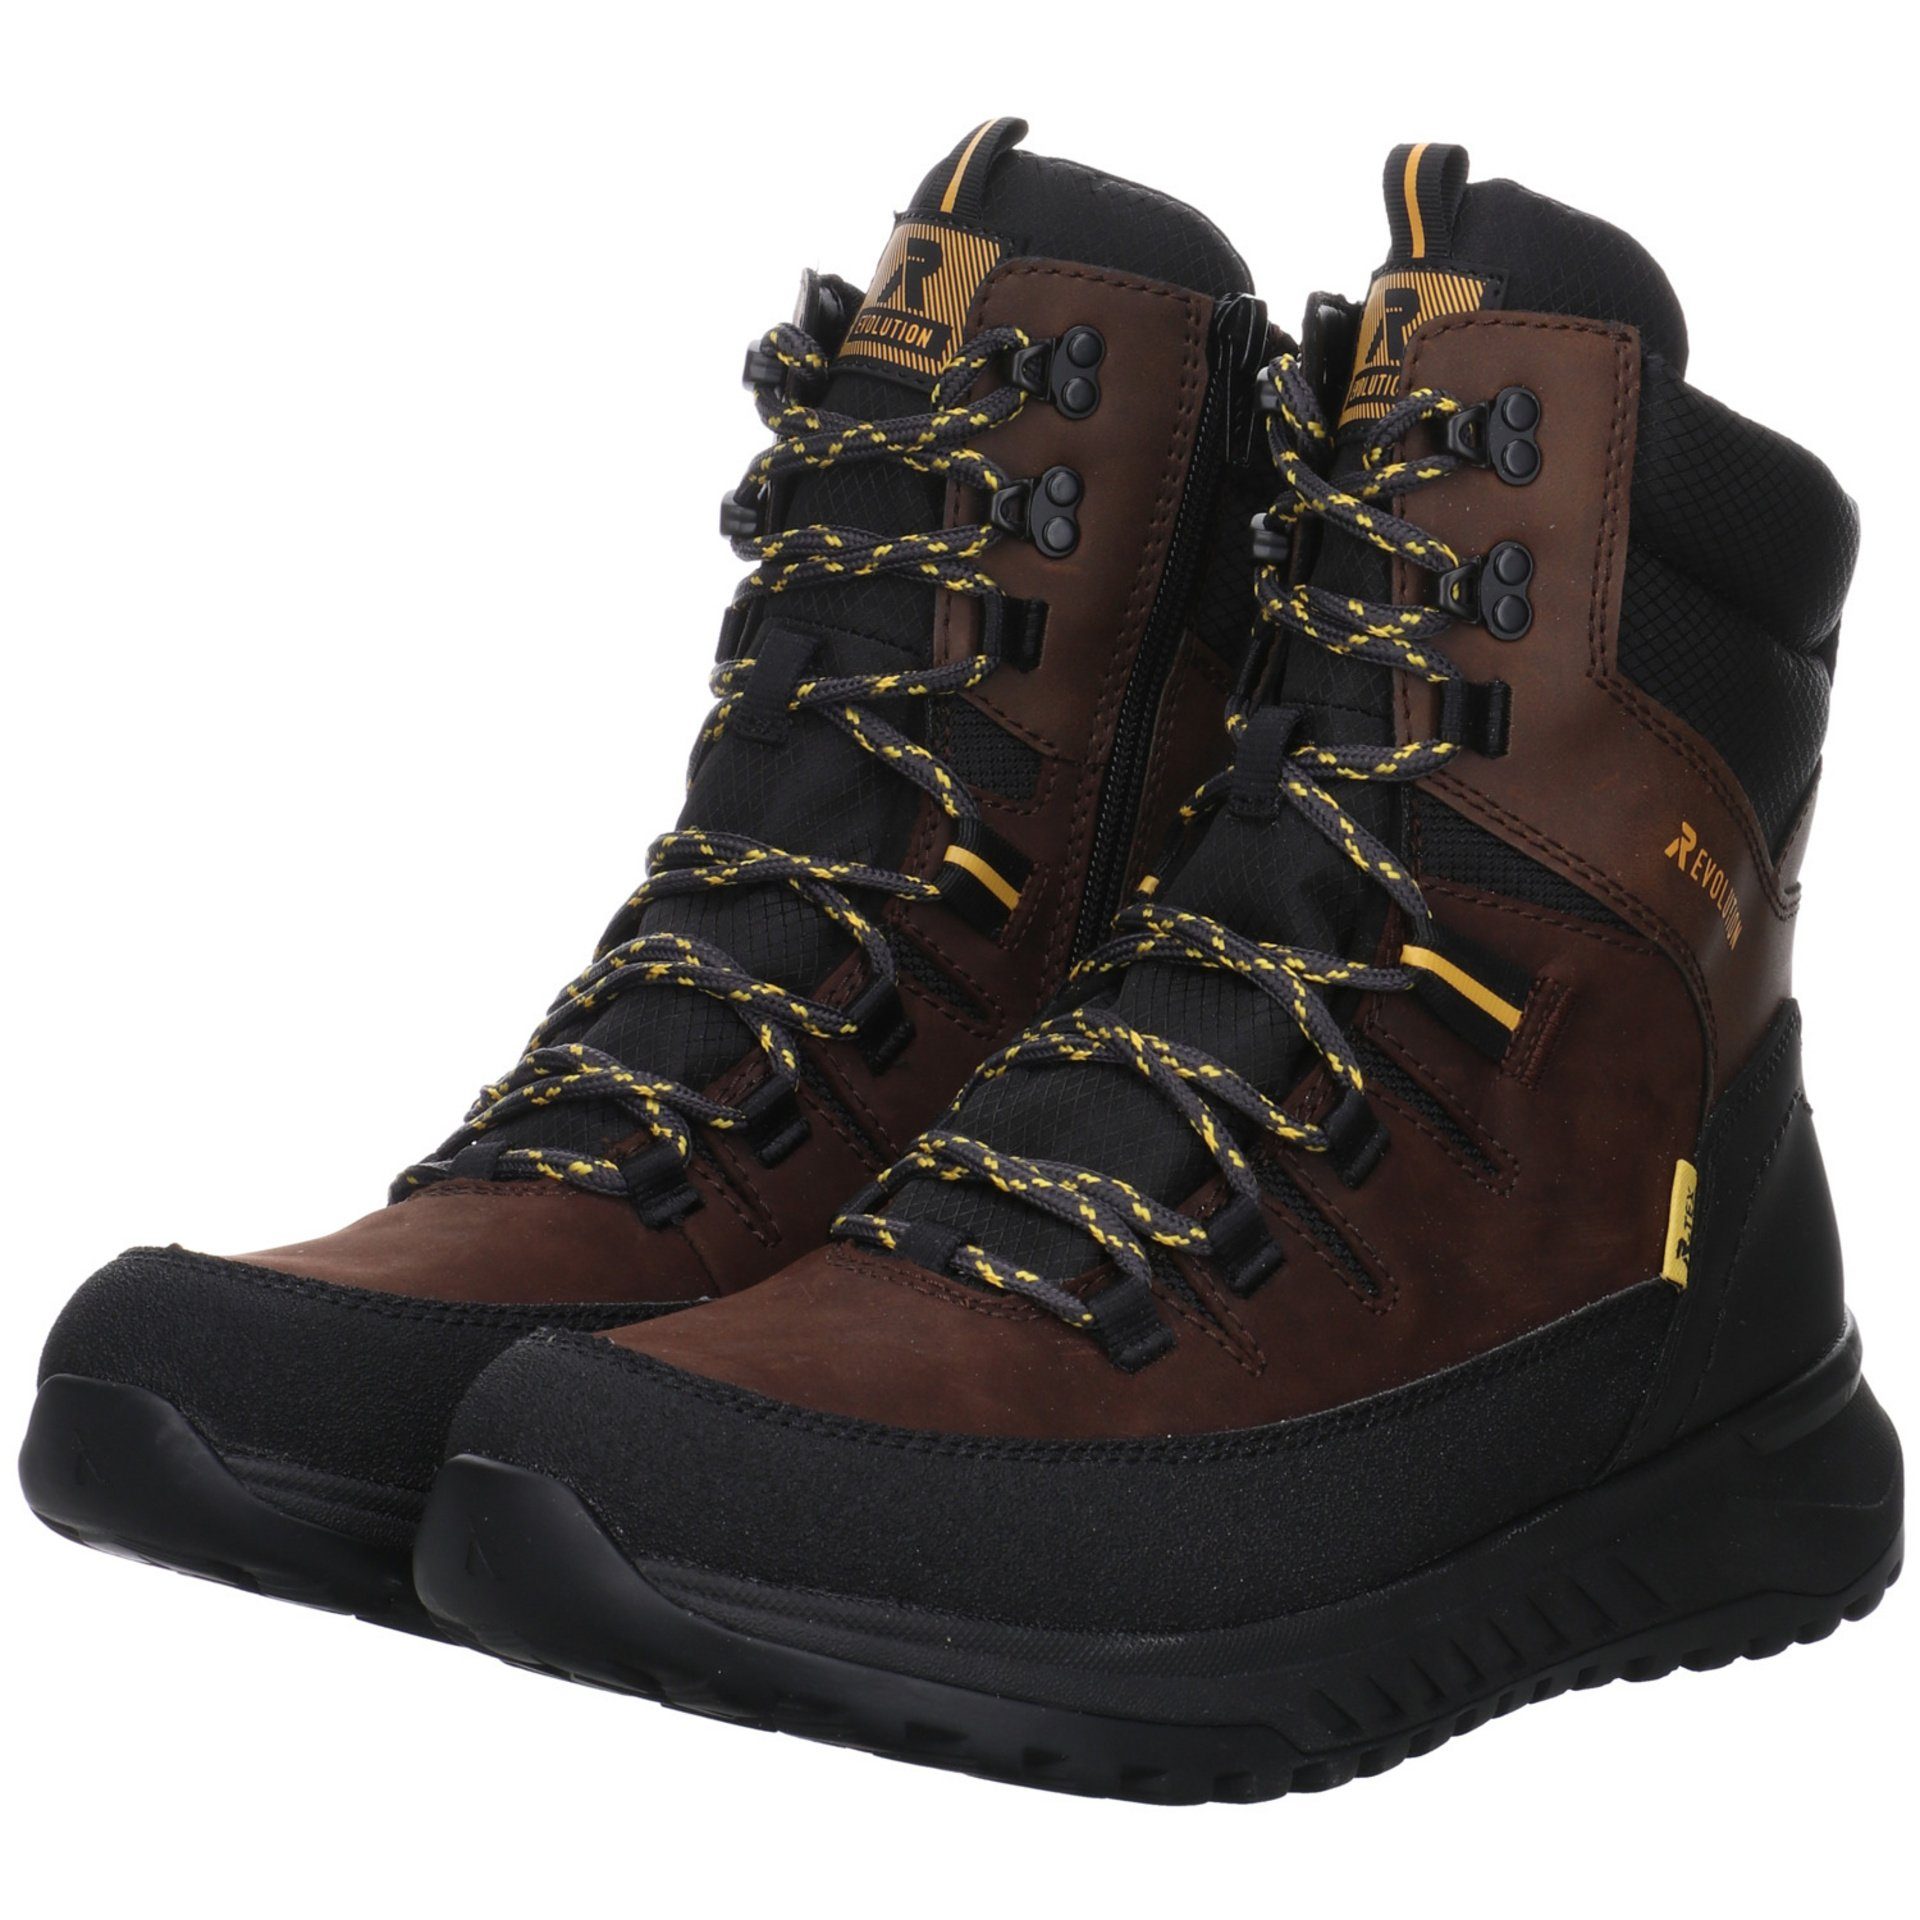 Rieker Herren Elegant Freizeit dunkel Schuhe Boots Snowboots Leder-/Textilkombination braun Winterstiefel